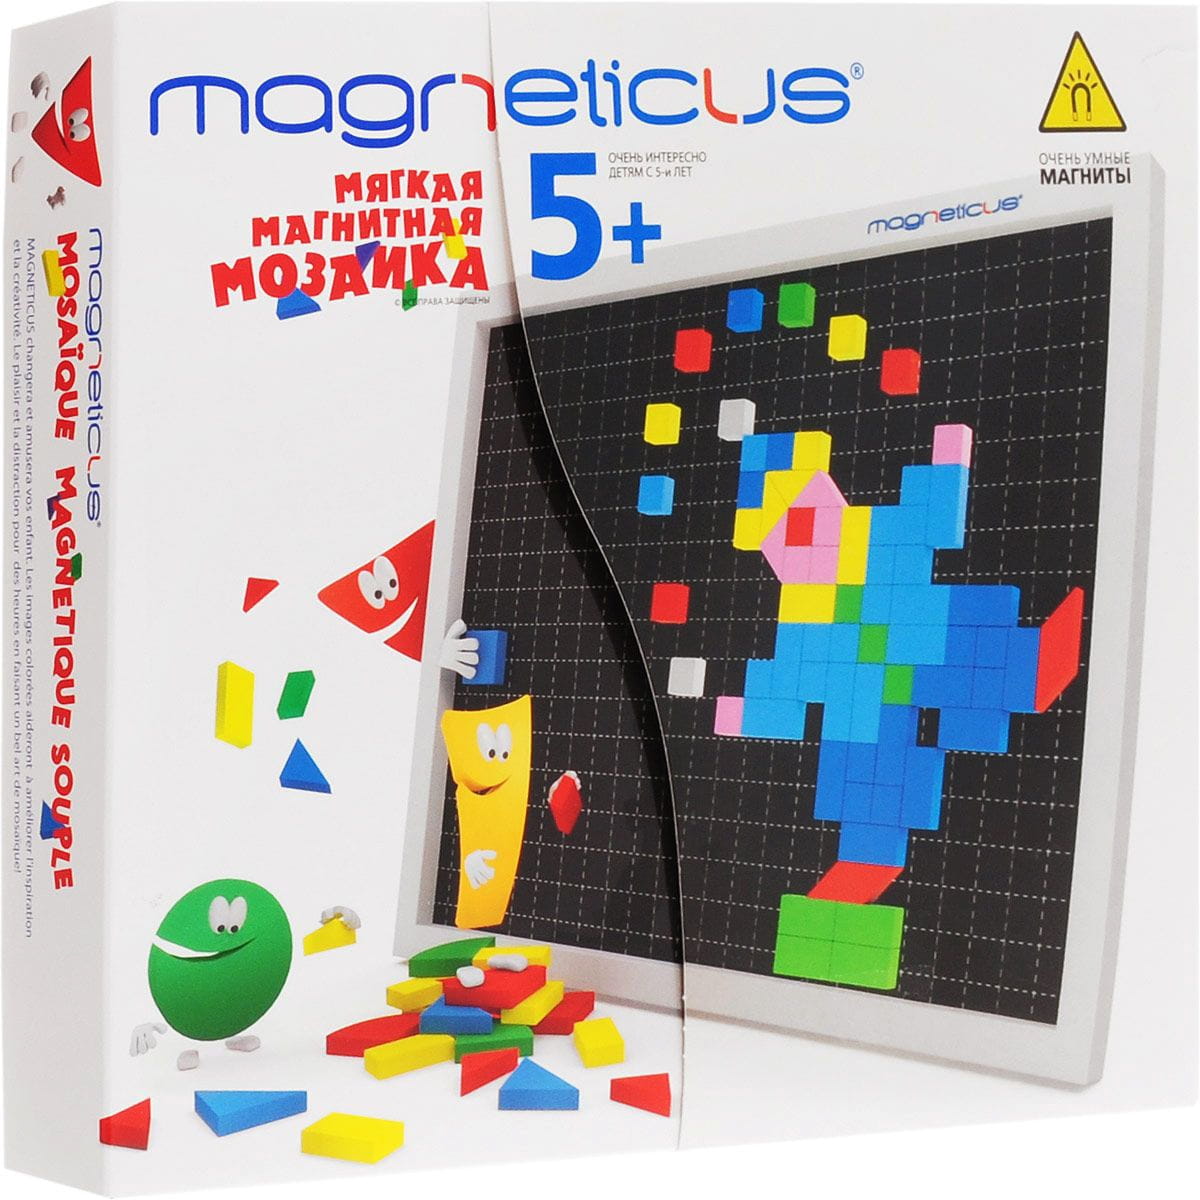    Magneticus - 220 